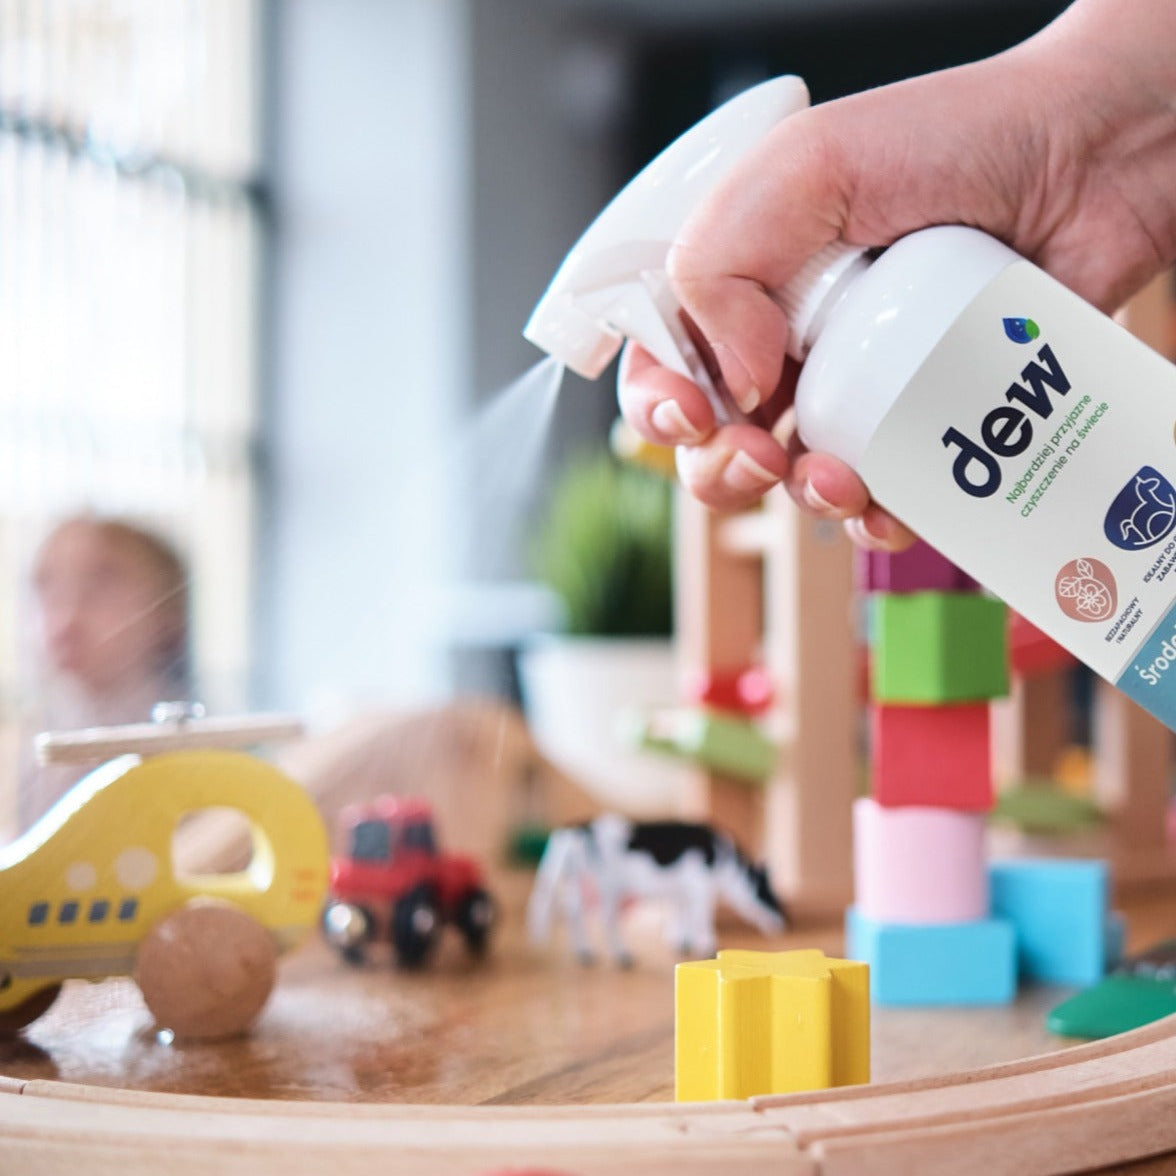 Dew: medida desinfectada para juguetes y otras superficies de cuidado infantil 2.5 L